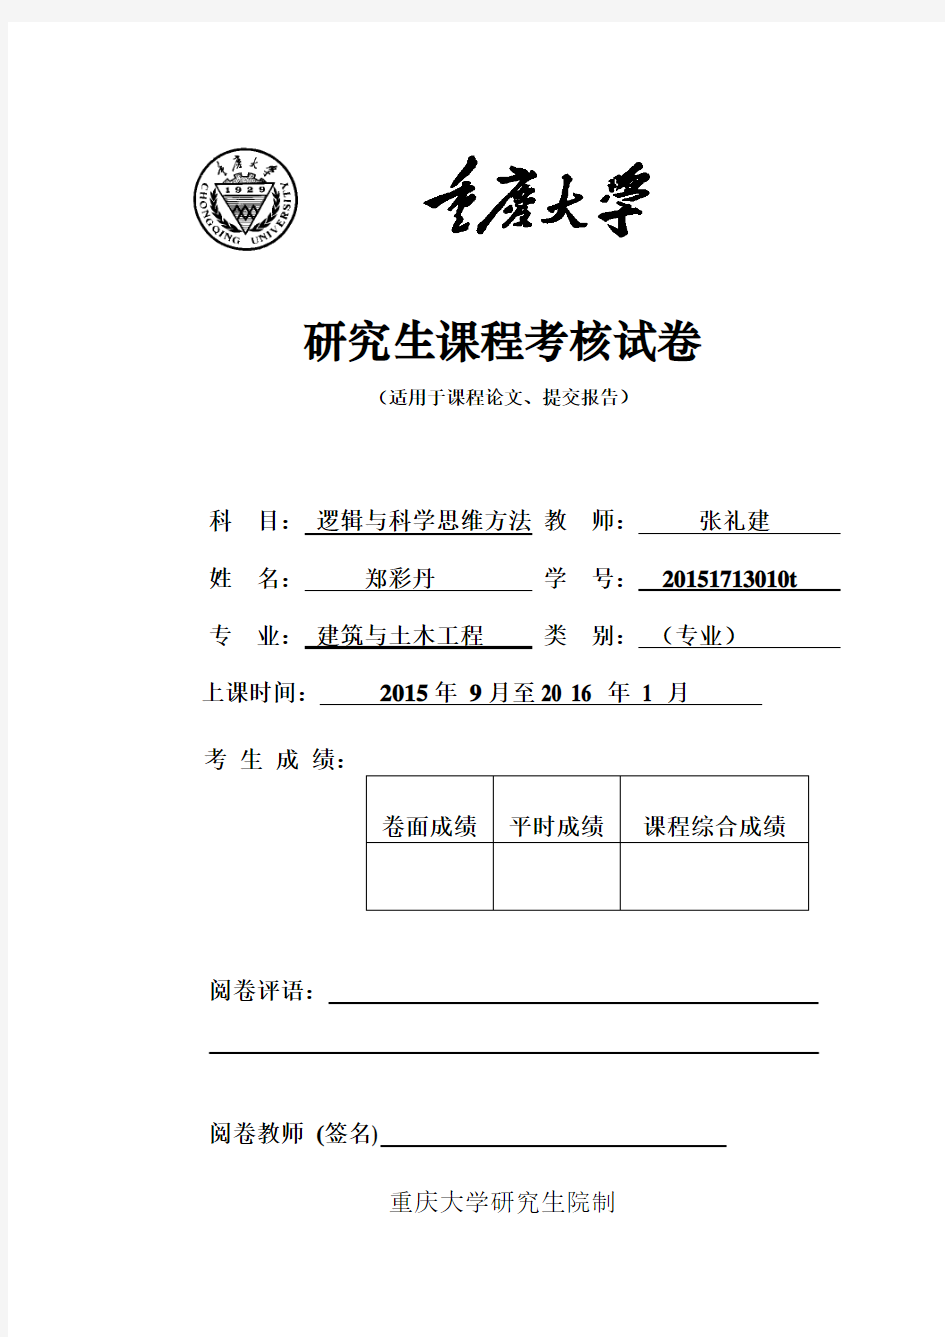 重庆大学研究生课程考核封面格式